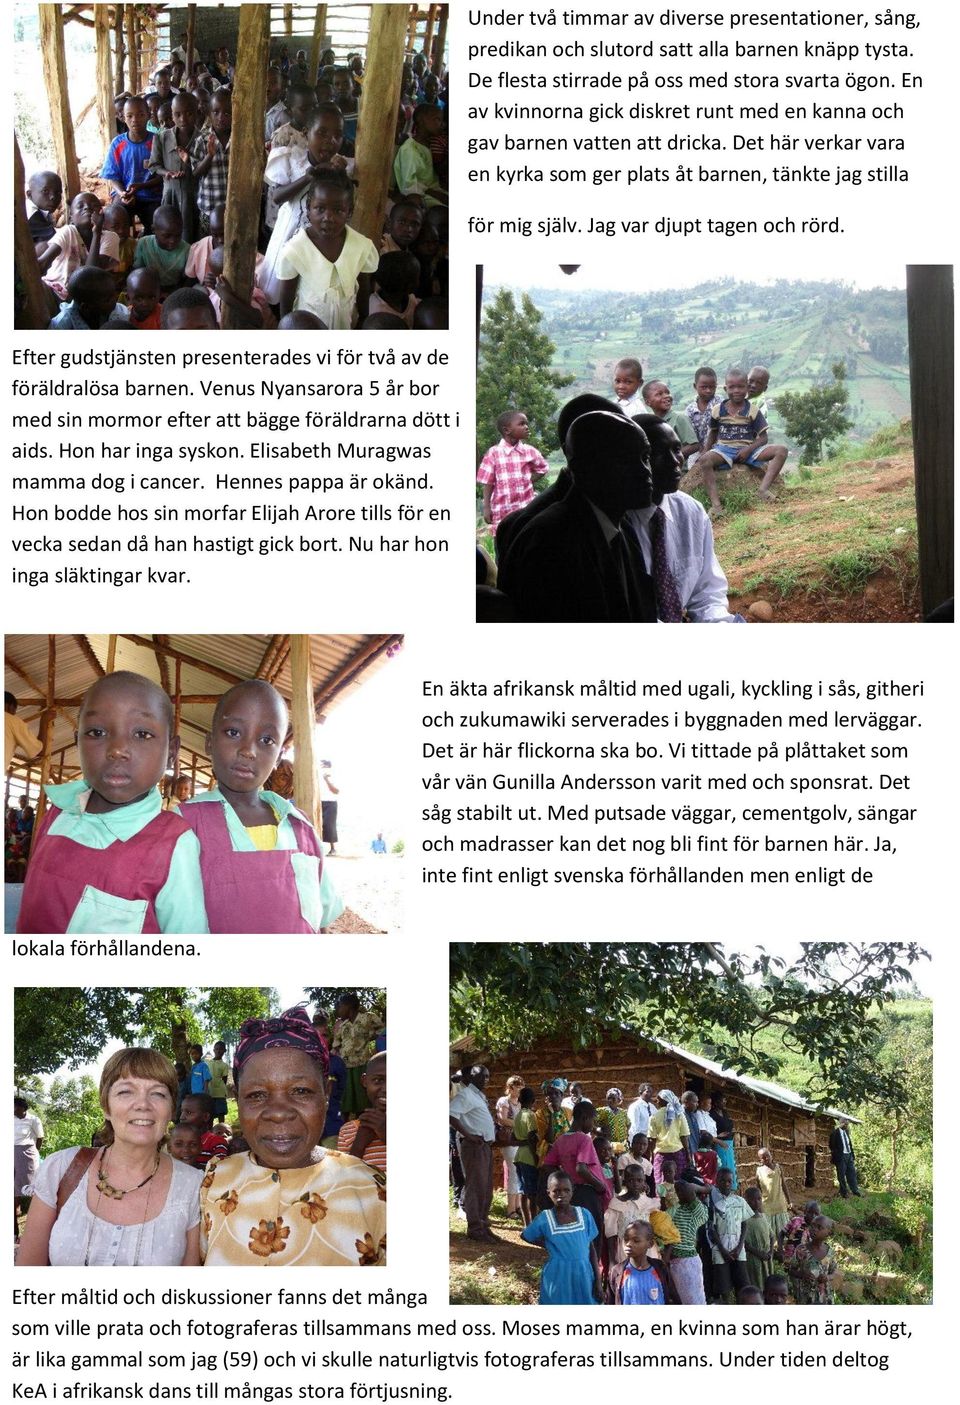 Efter gudstjänsten presenterades vi för två av de föräldralösa barnen. Venus Nyansarora 5 år bor med sin mormor efter att bägge föräldrarna dött i aids. Hon har inga syskon.